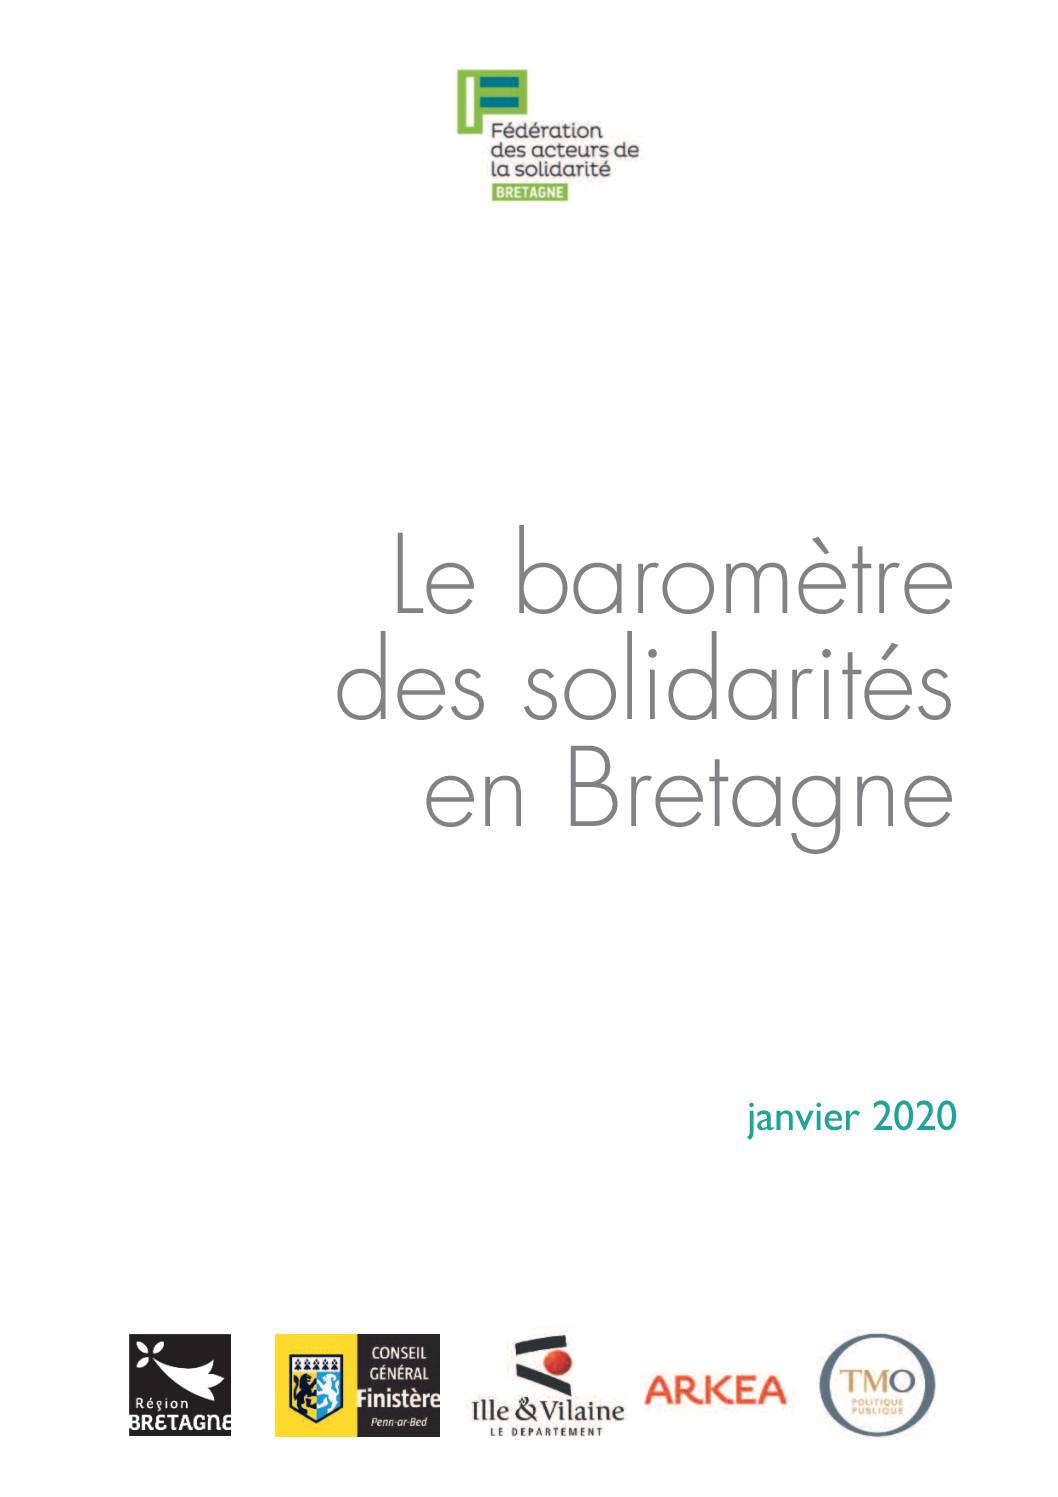 Le baromètre des solidarités en Bretagne